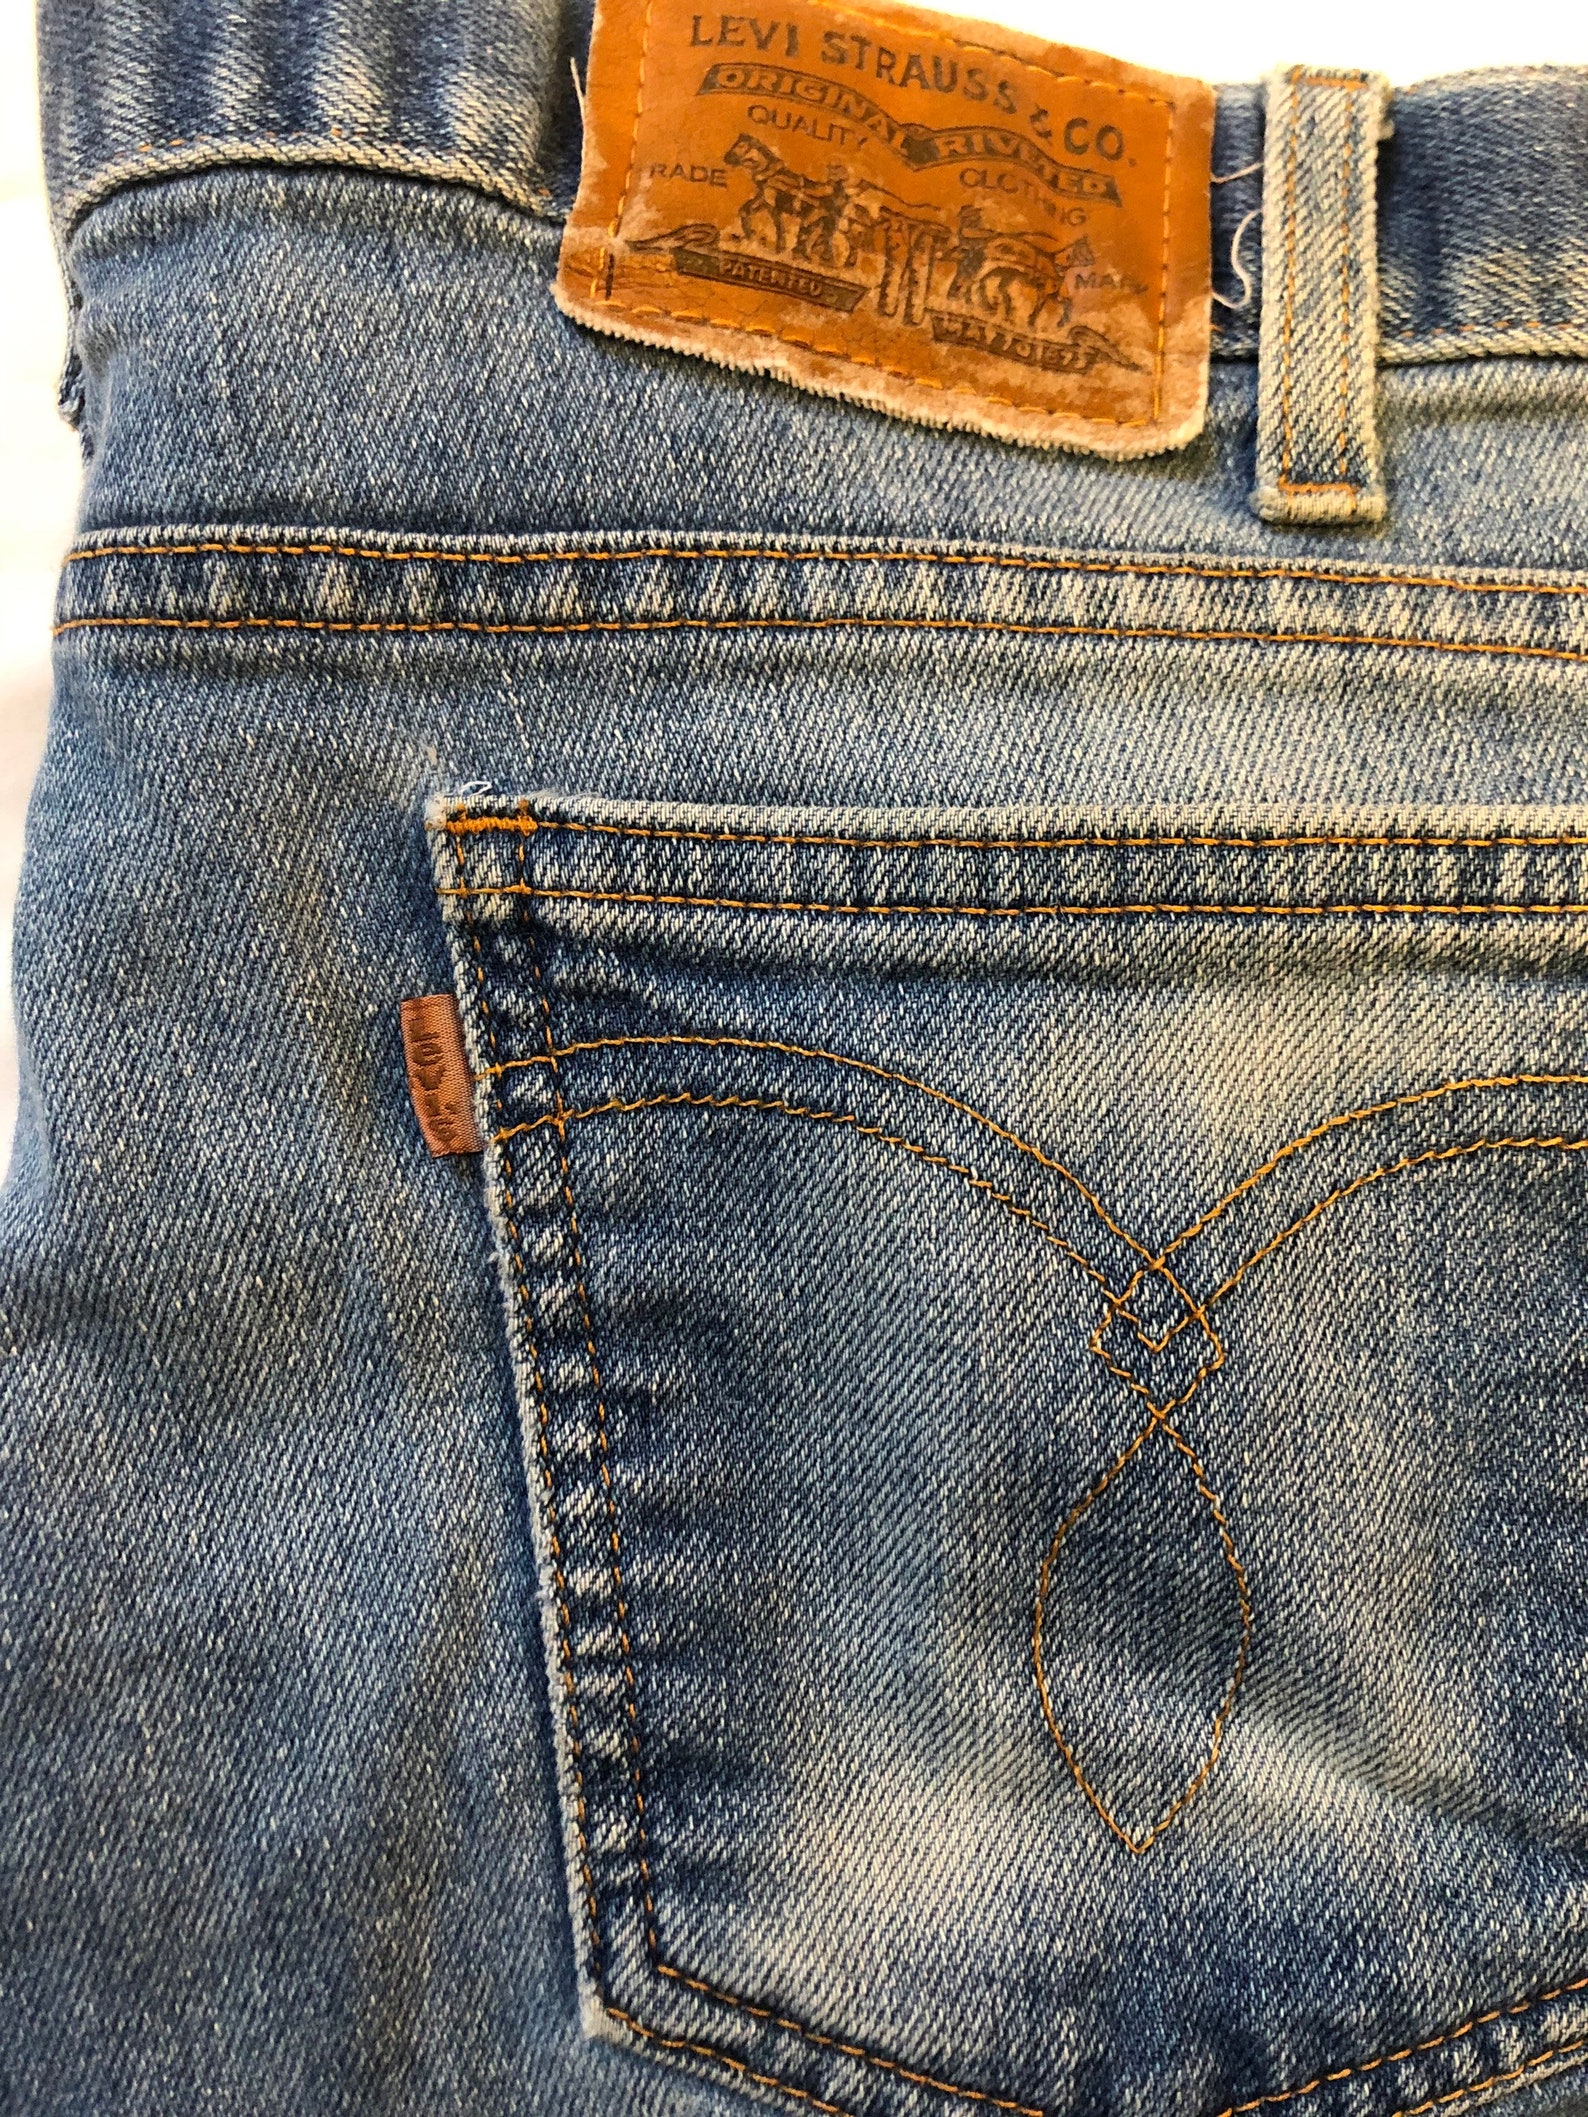 Vintage Levis Brown Tab Jeans - Etsy